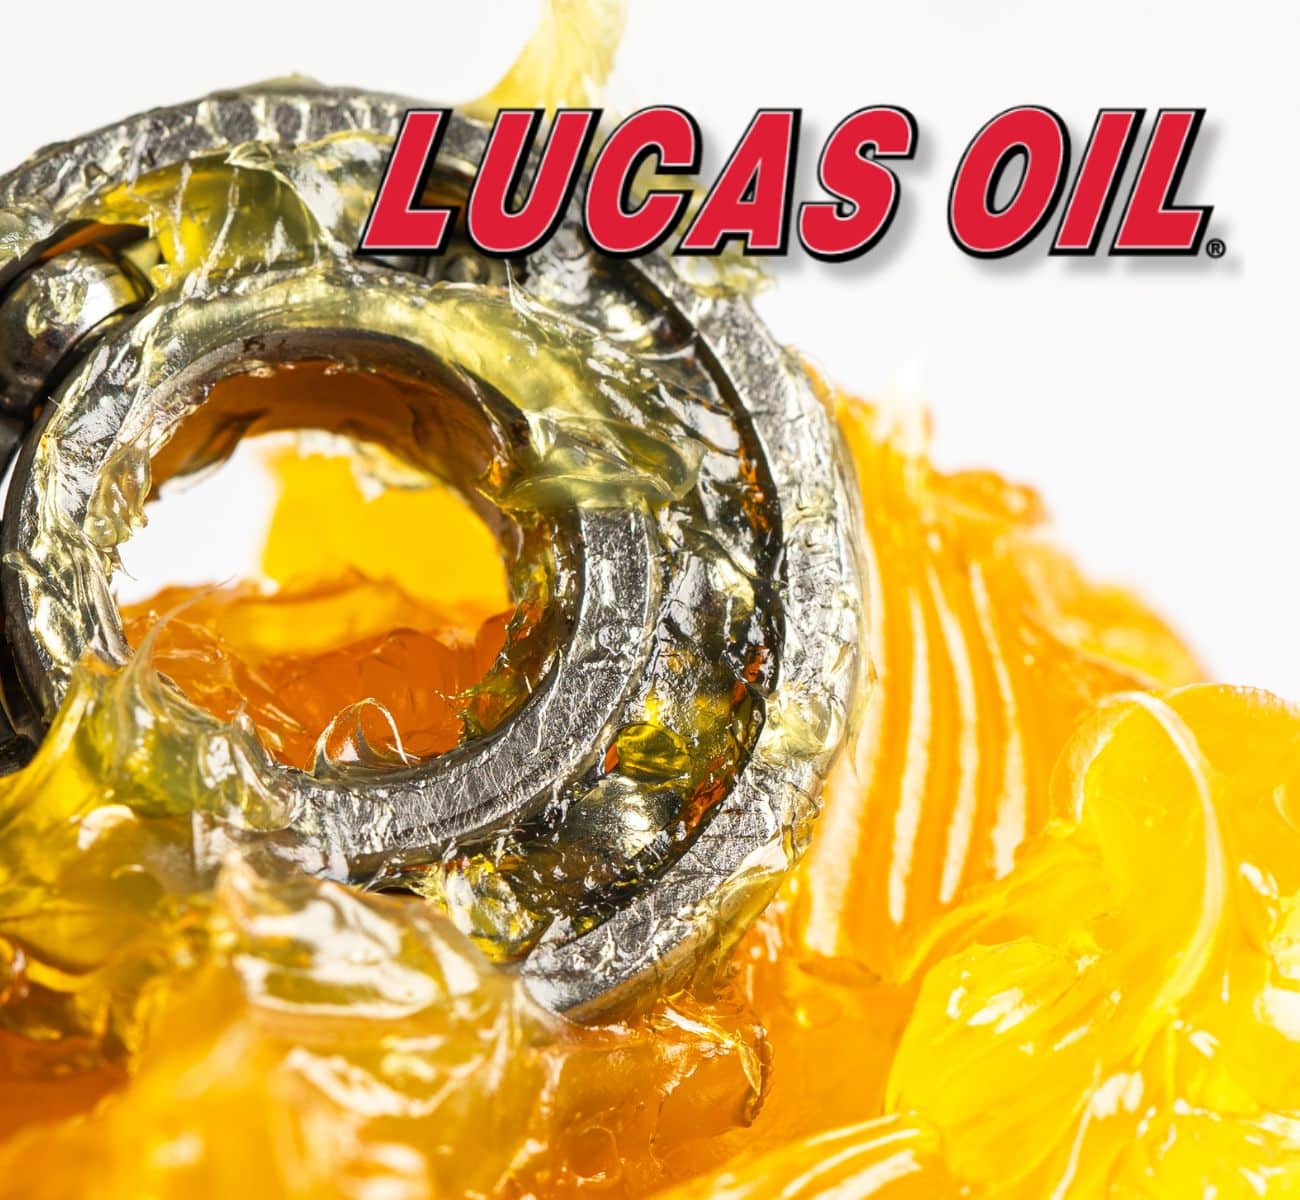 Les huiles moteur de qualité supérieure de Lucas Oil atteignent les marchés sud-américains par l'intermédiaire de VT Batteries.